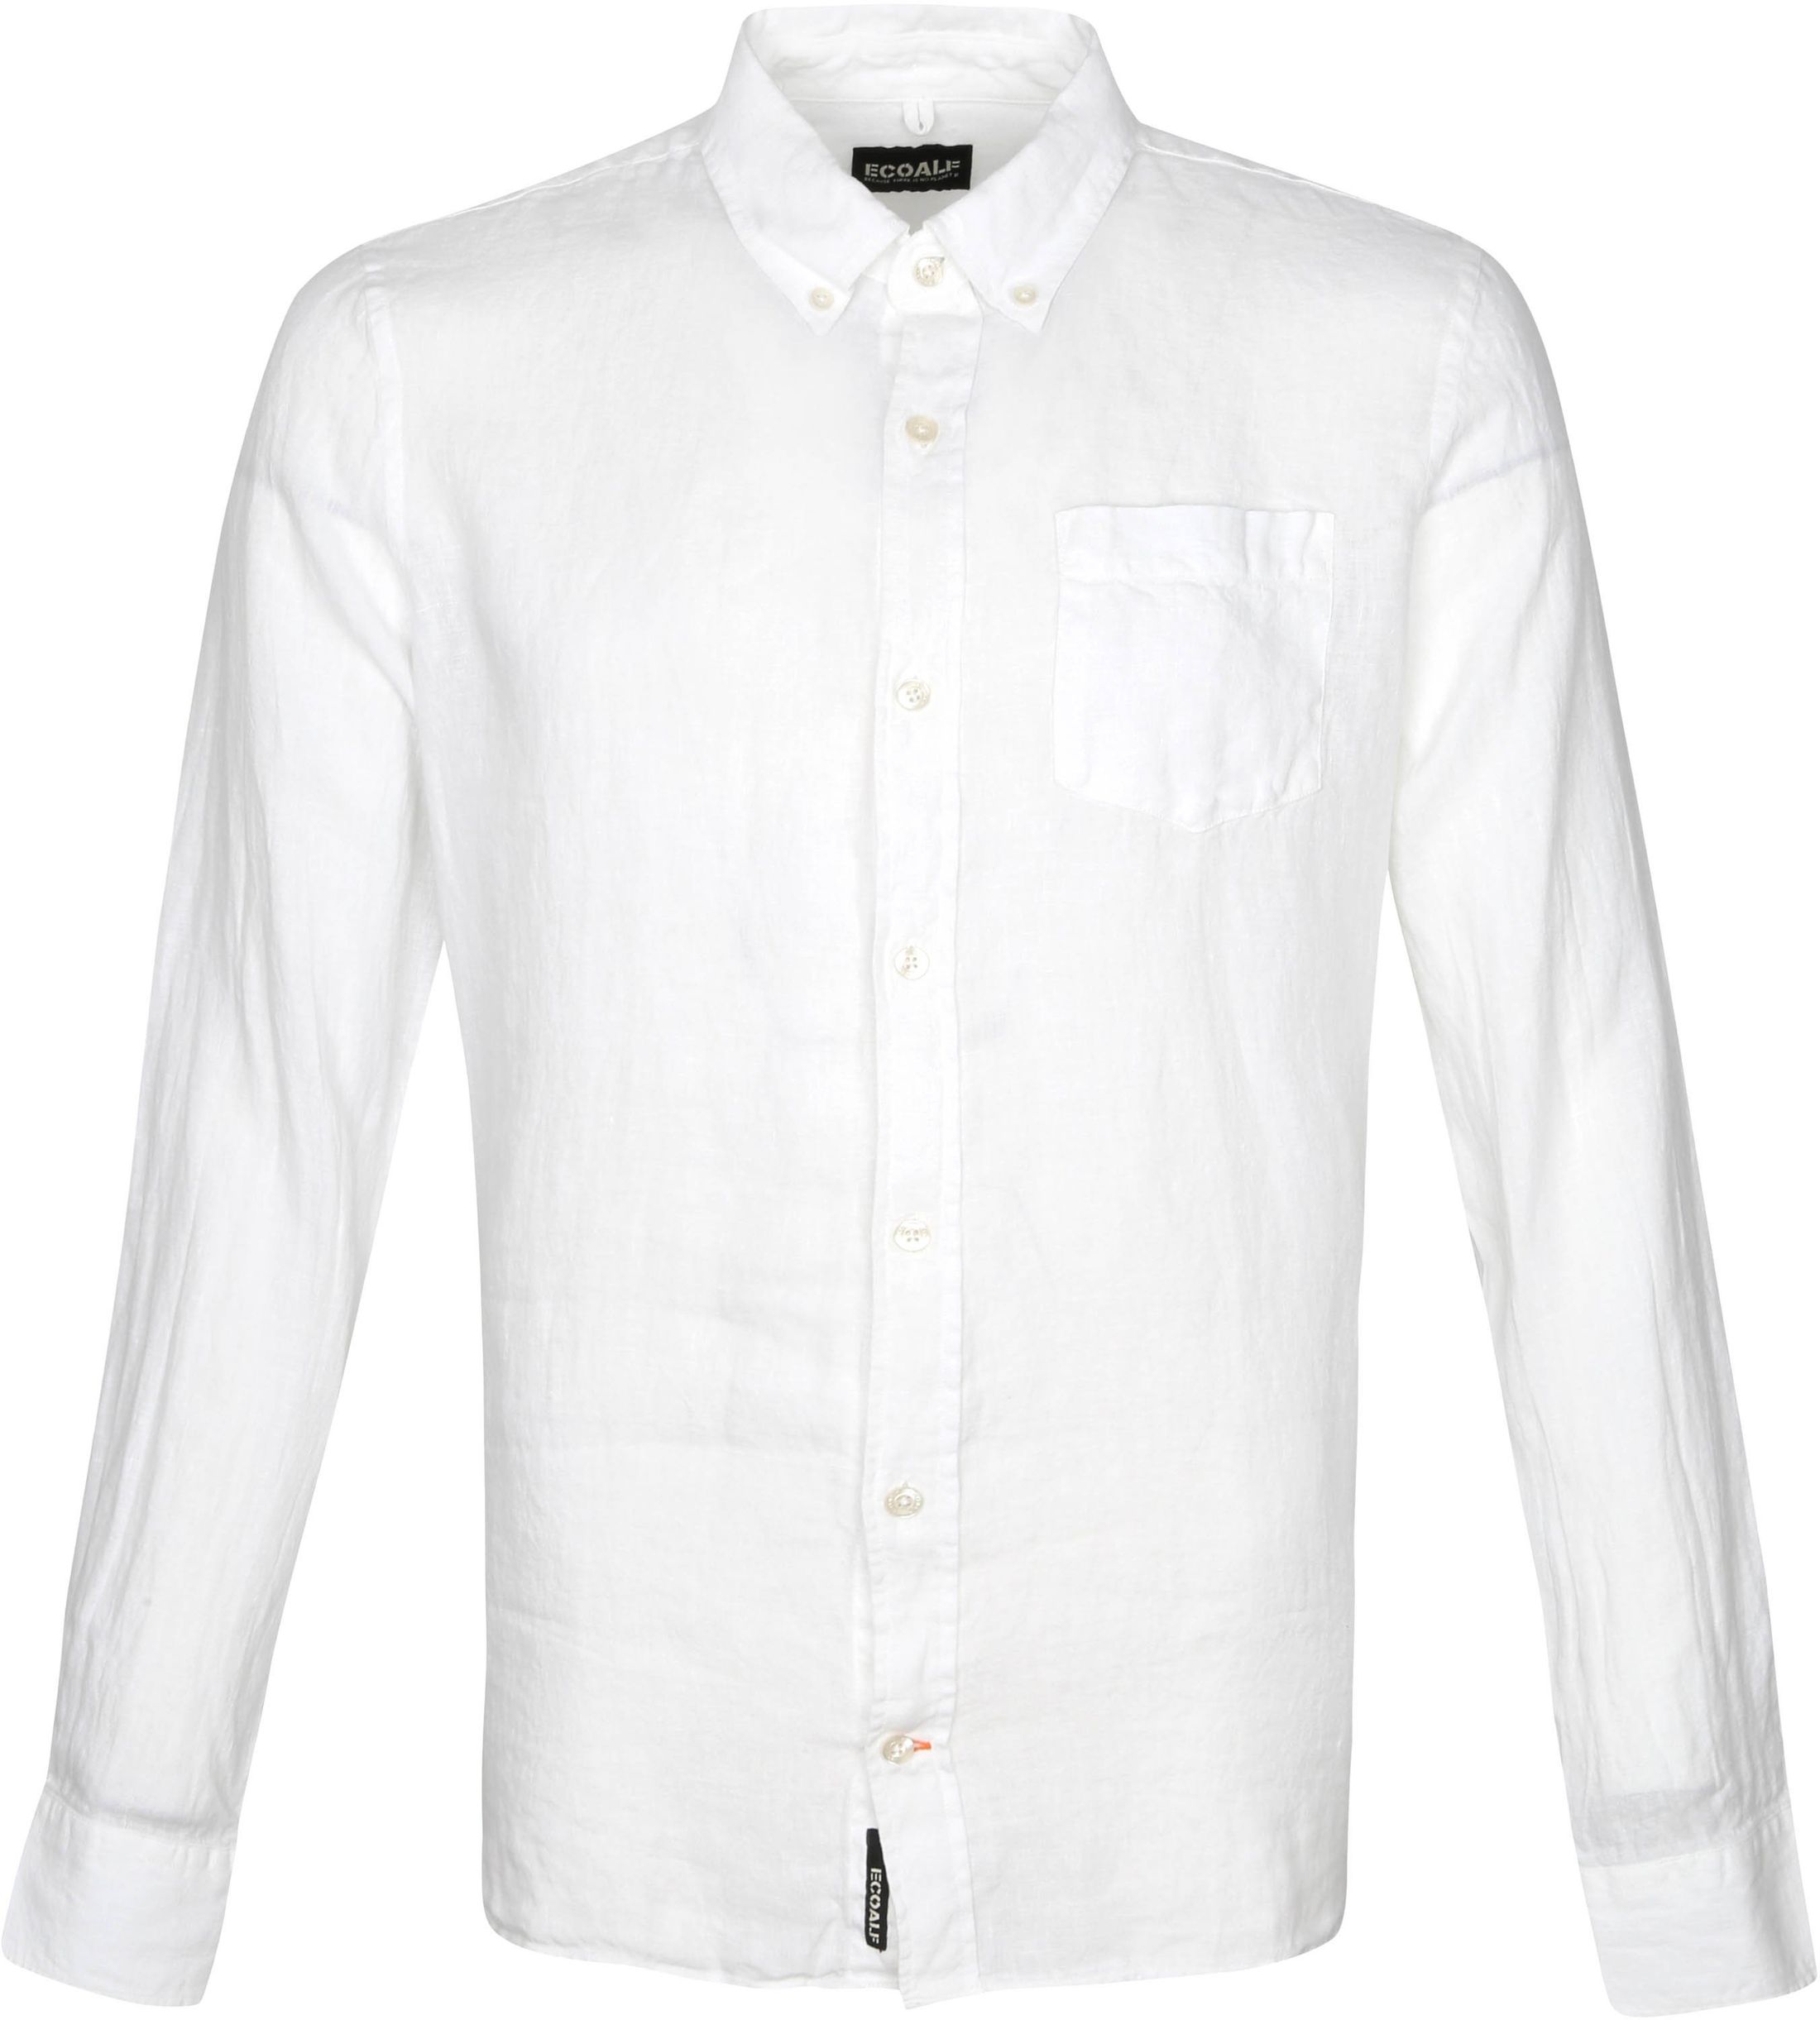 Ecoalf Malibi Shirt White size L